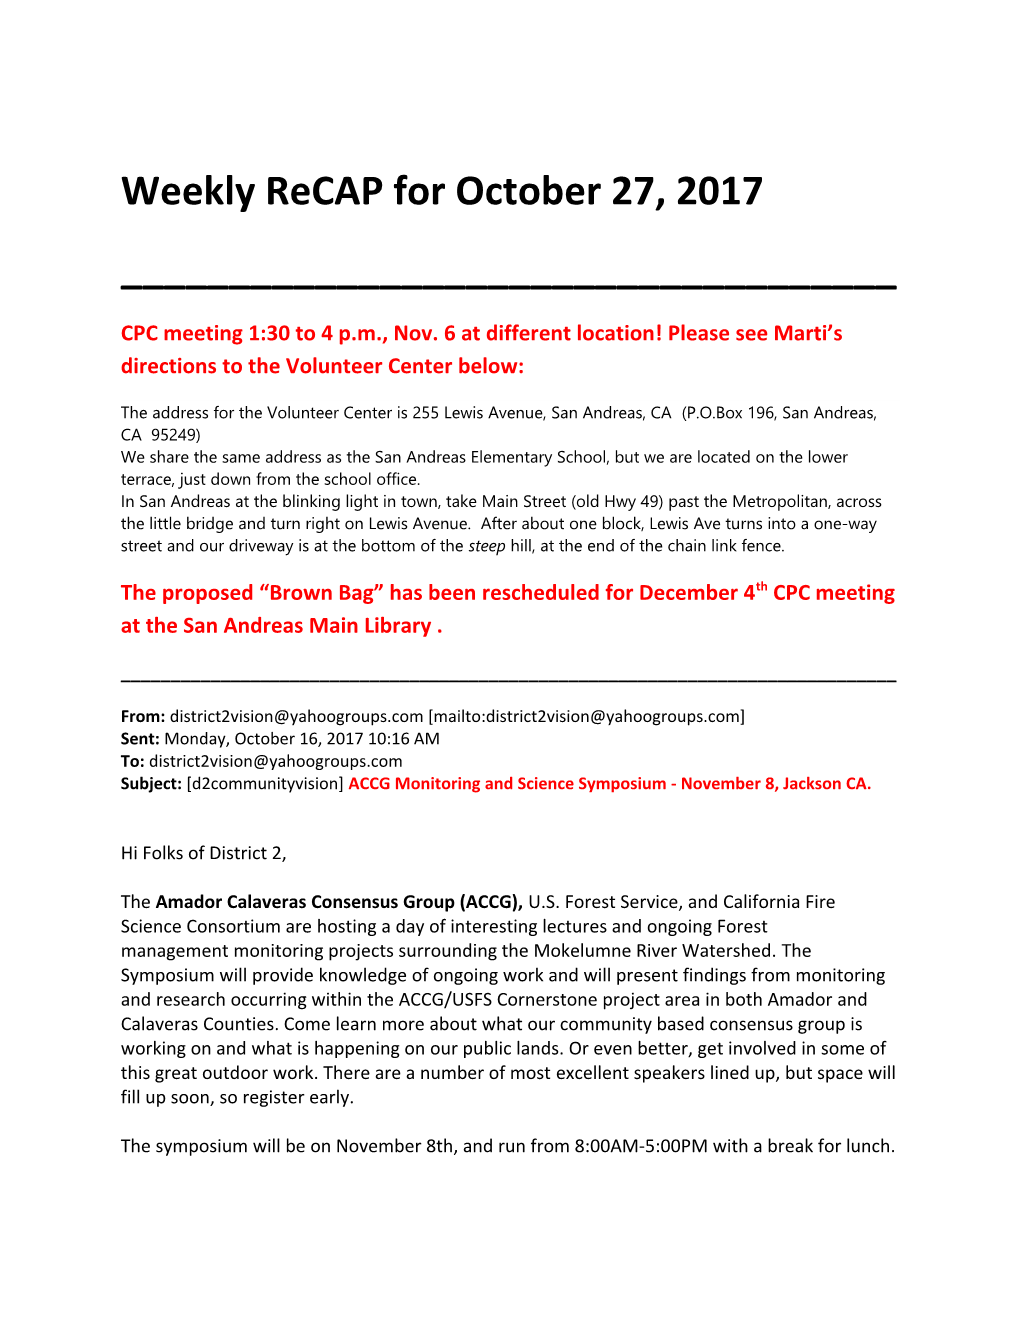 Weekly Recap for October 27, 2017